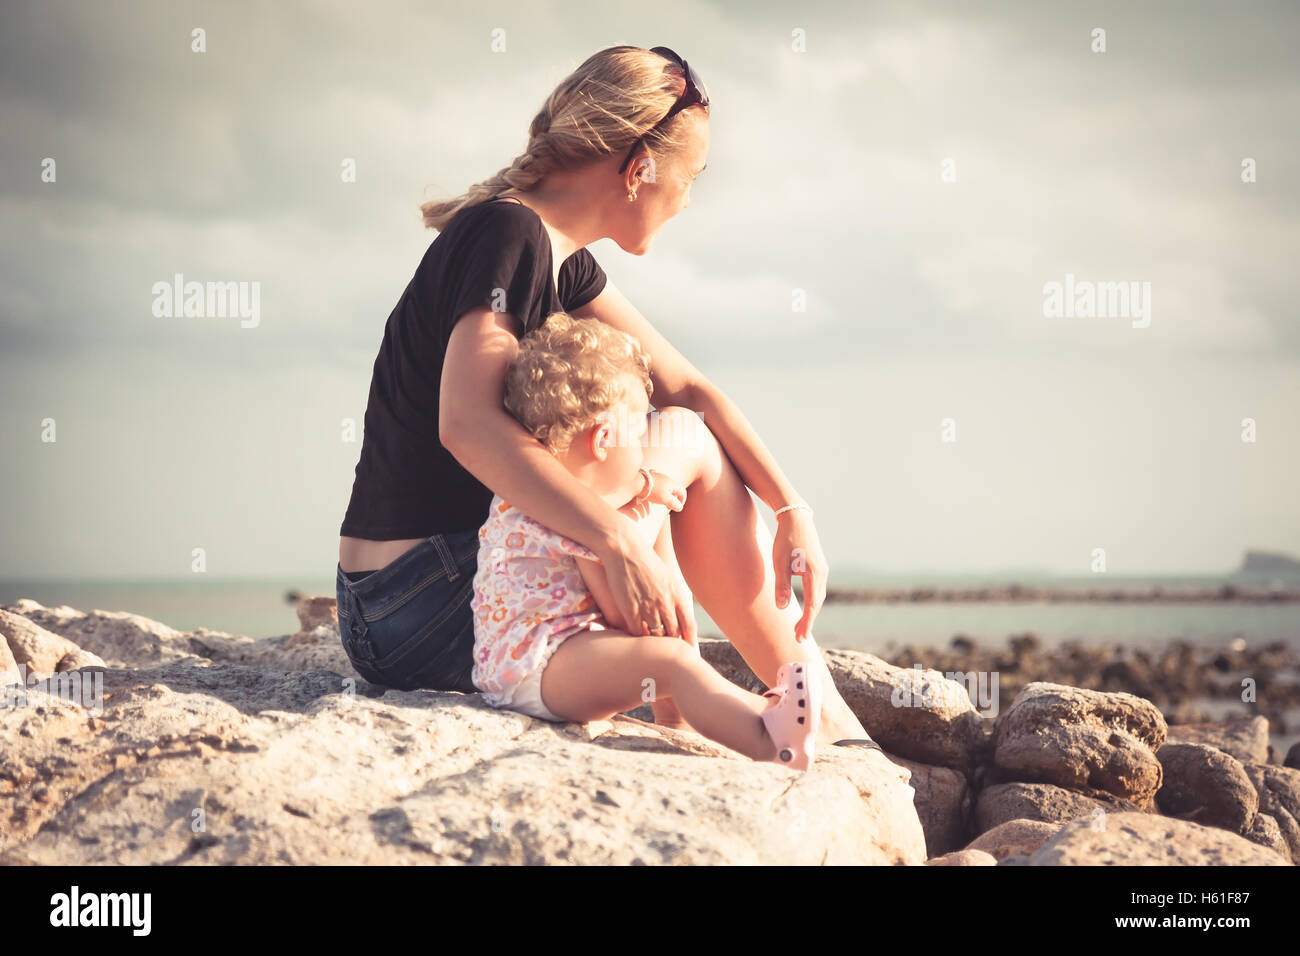 La mère et son bébé assis ensemble sur la plage côte pendant le coucher du soleil et à la recherche dans la distance. Mère et enfant embrasser la lumière du soleil illumine Banque D'Images